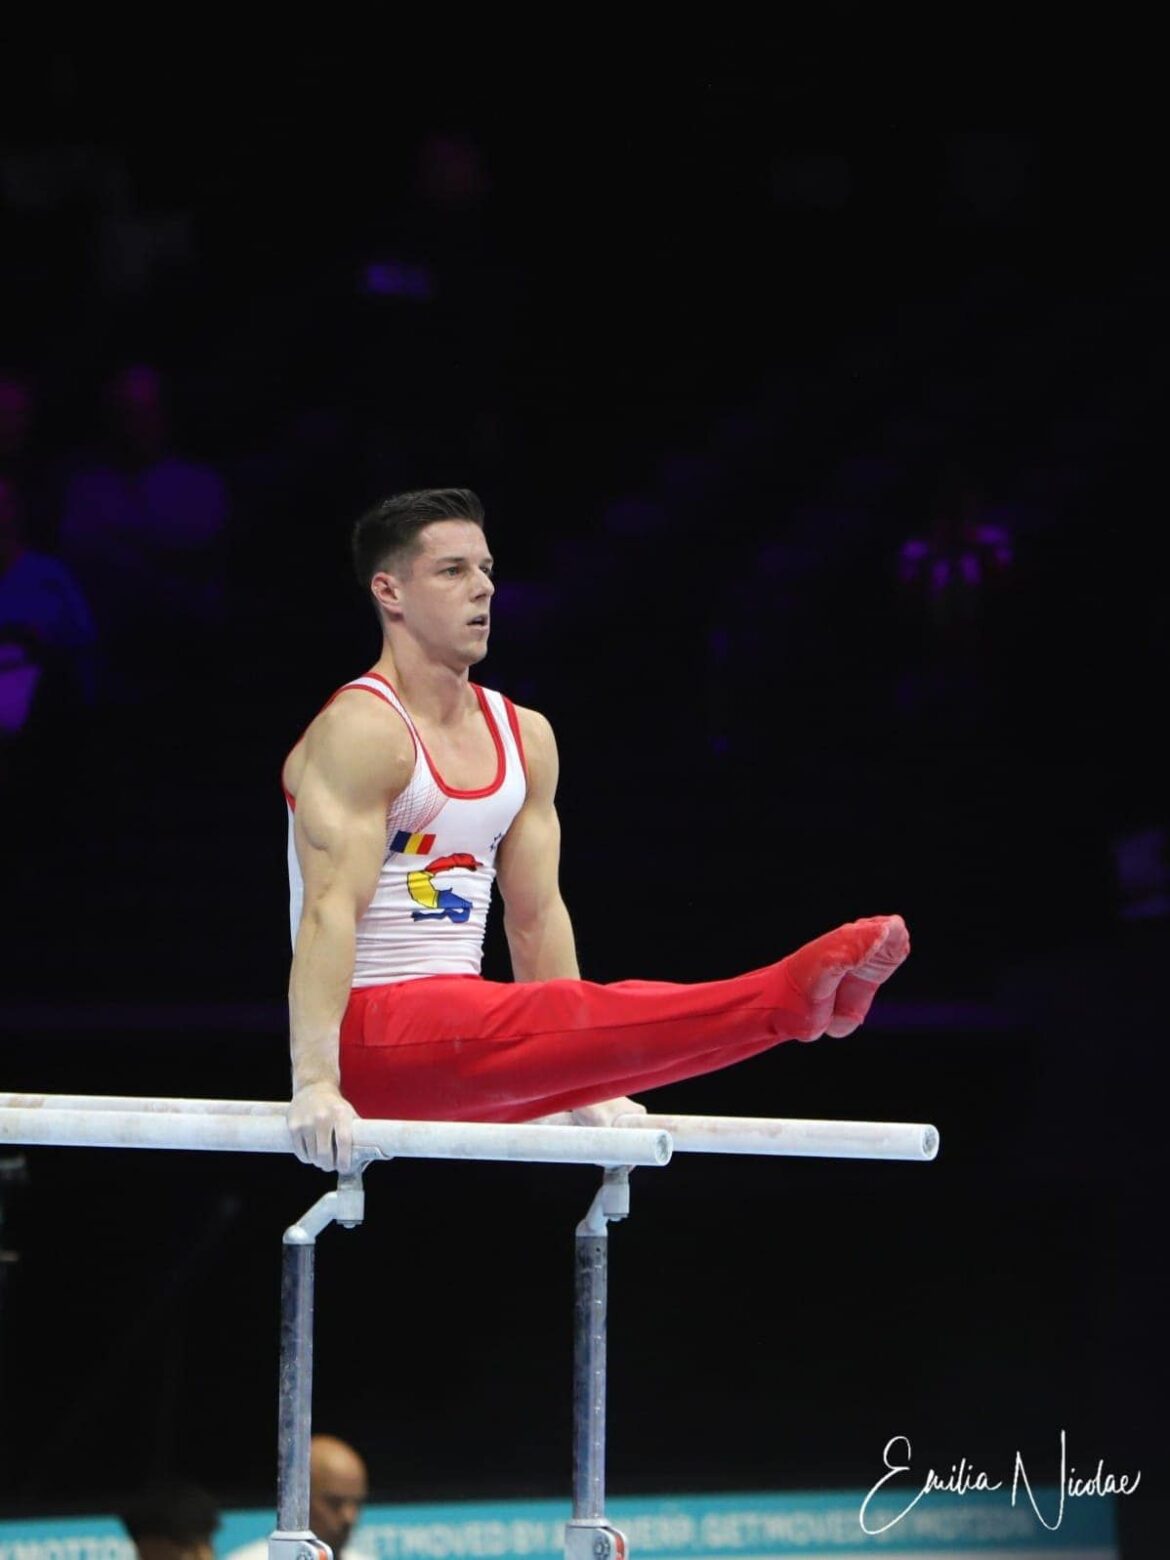 Prestatie voor Roemeense gymnastiek: Andrei Muntean gekwalificeerd voor de Olympische Spelen!